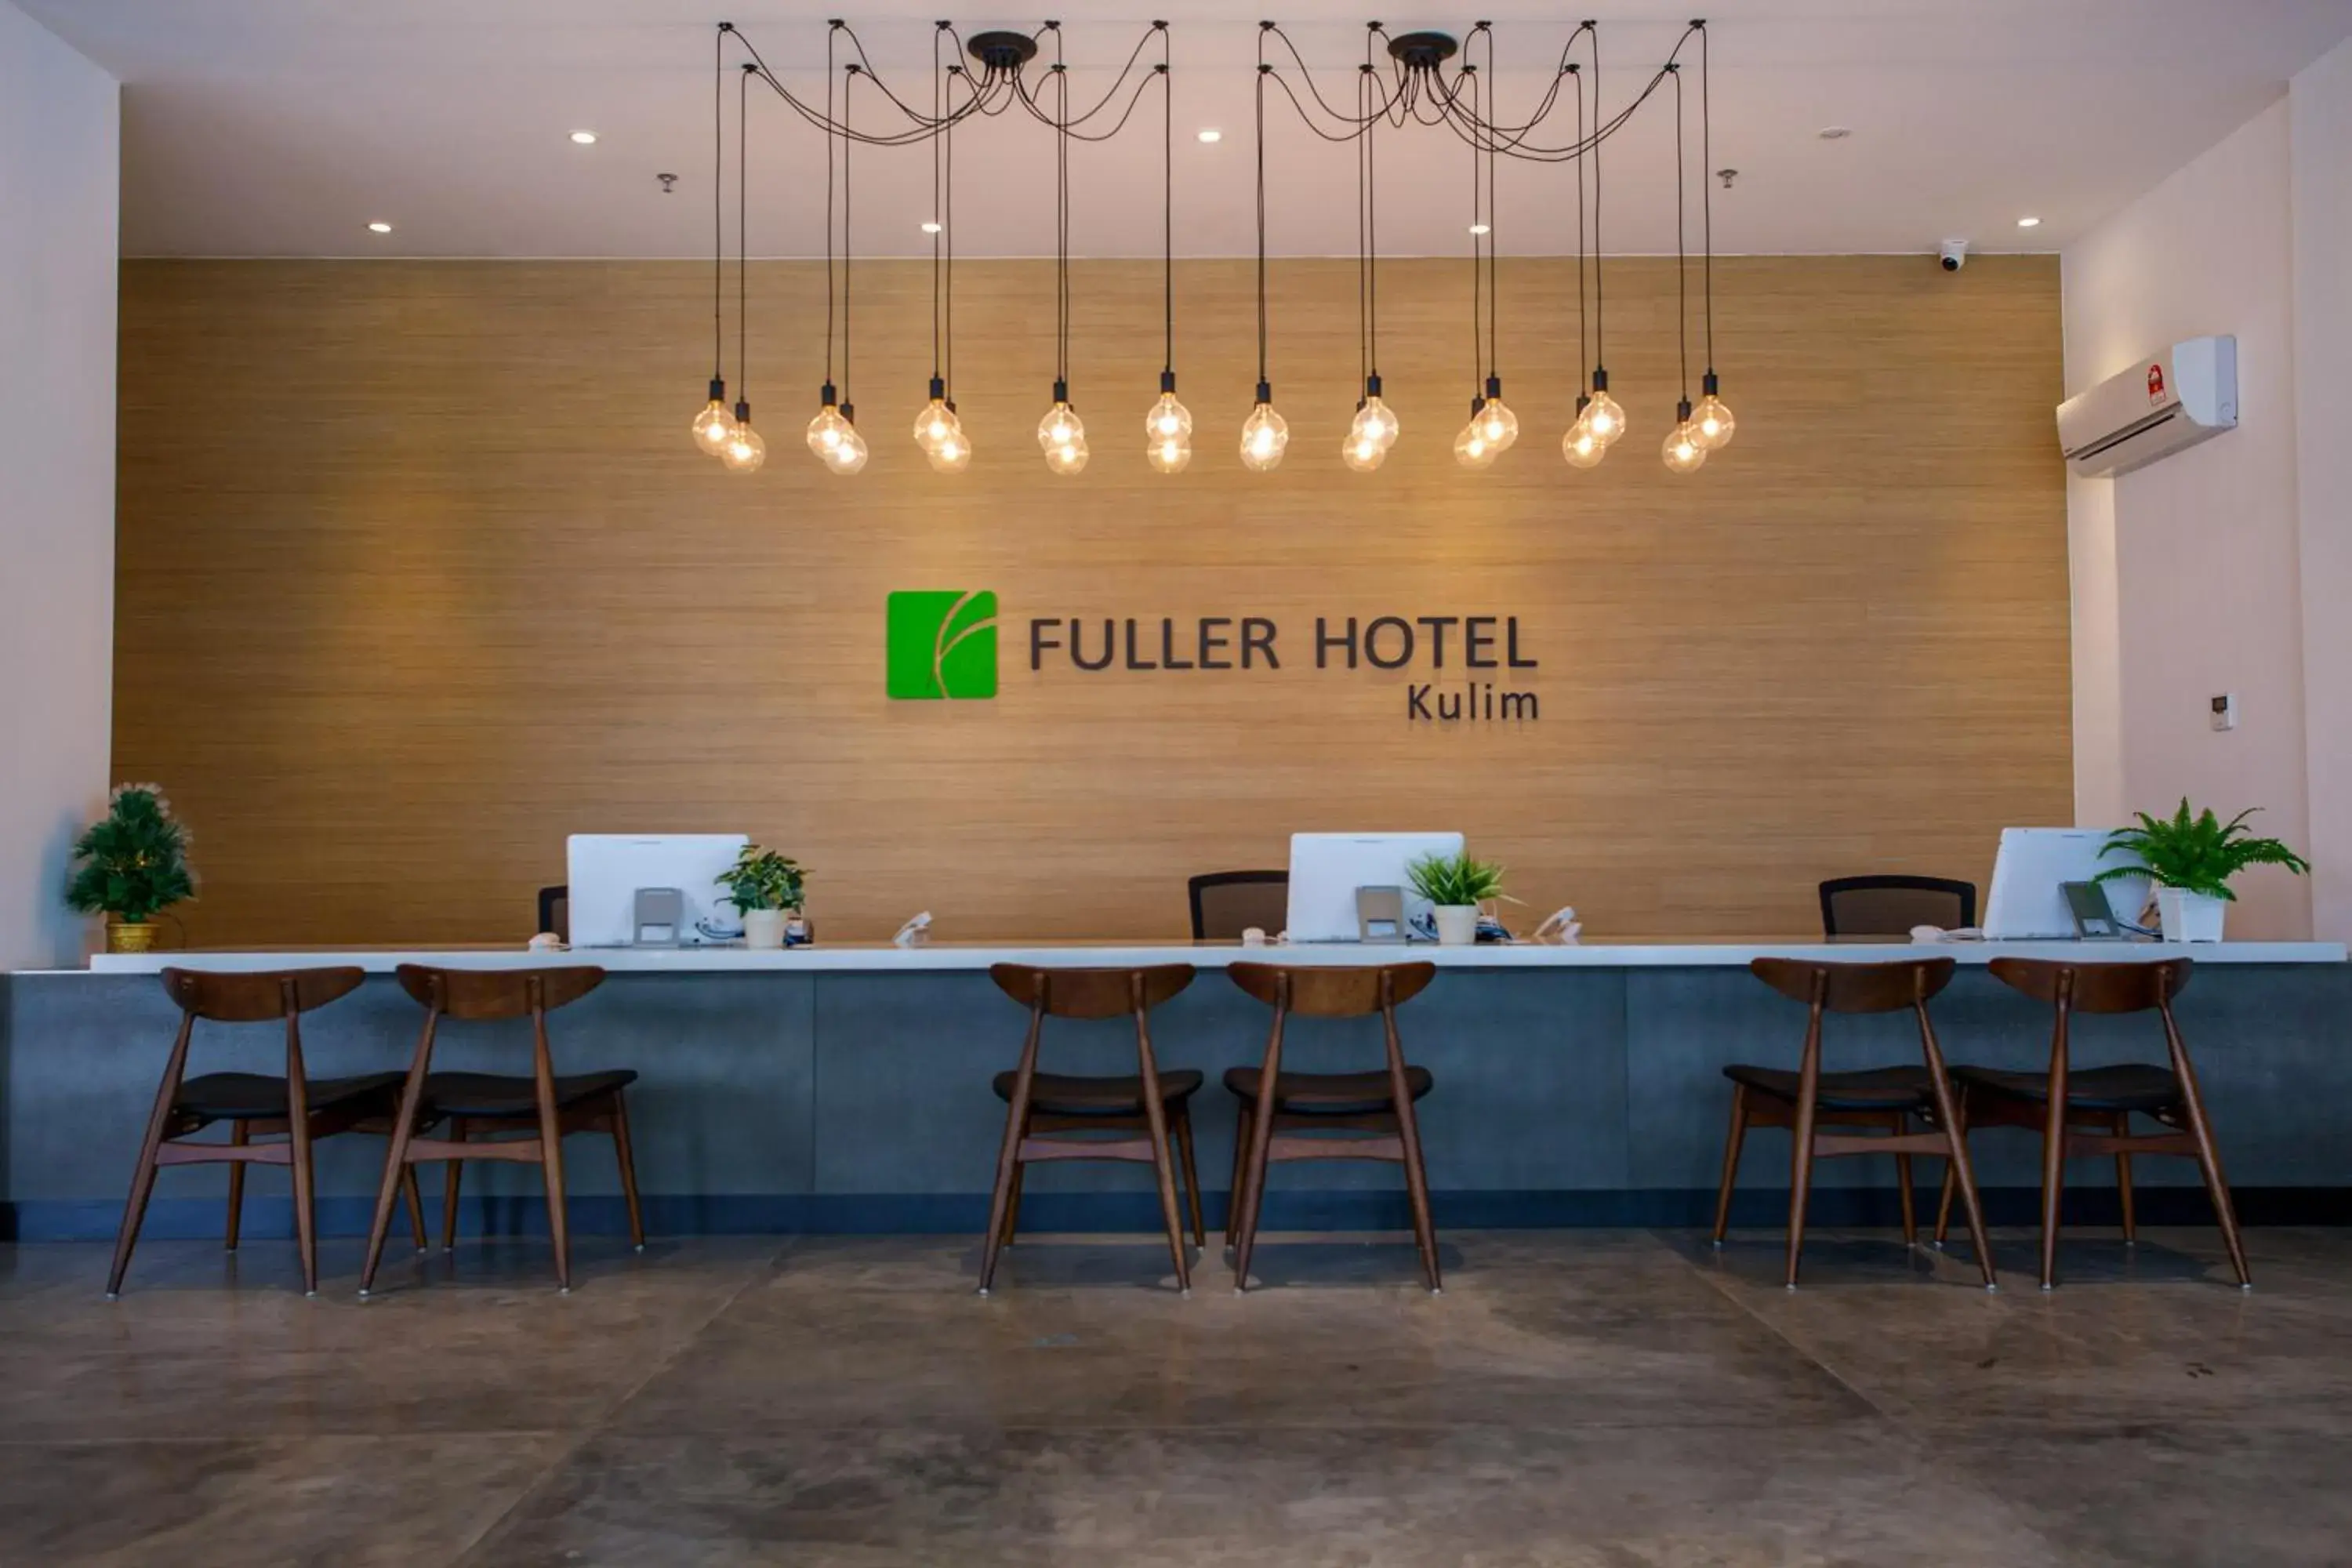 Property logo or sign in Fuller Hotel Kulim